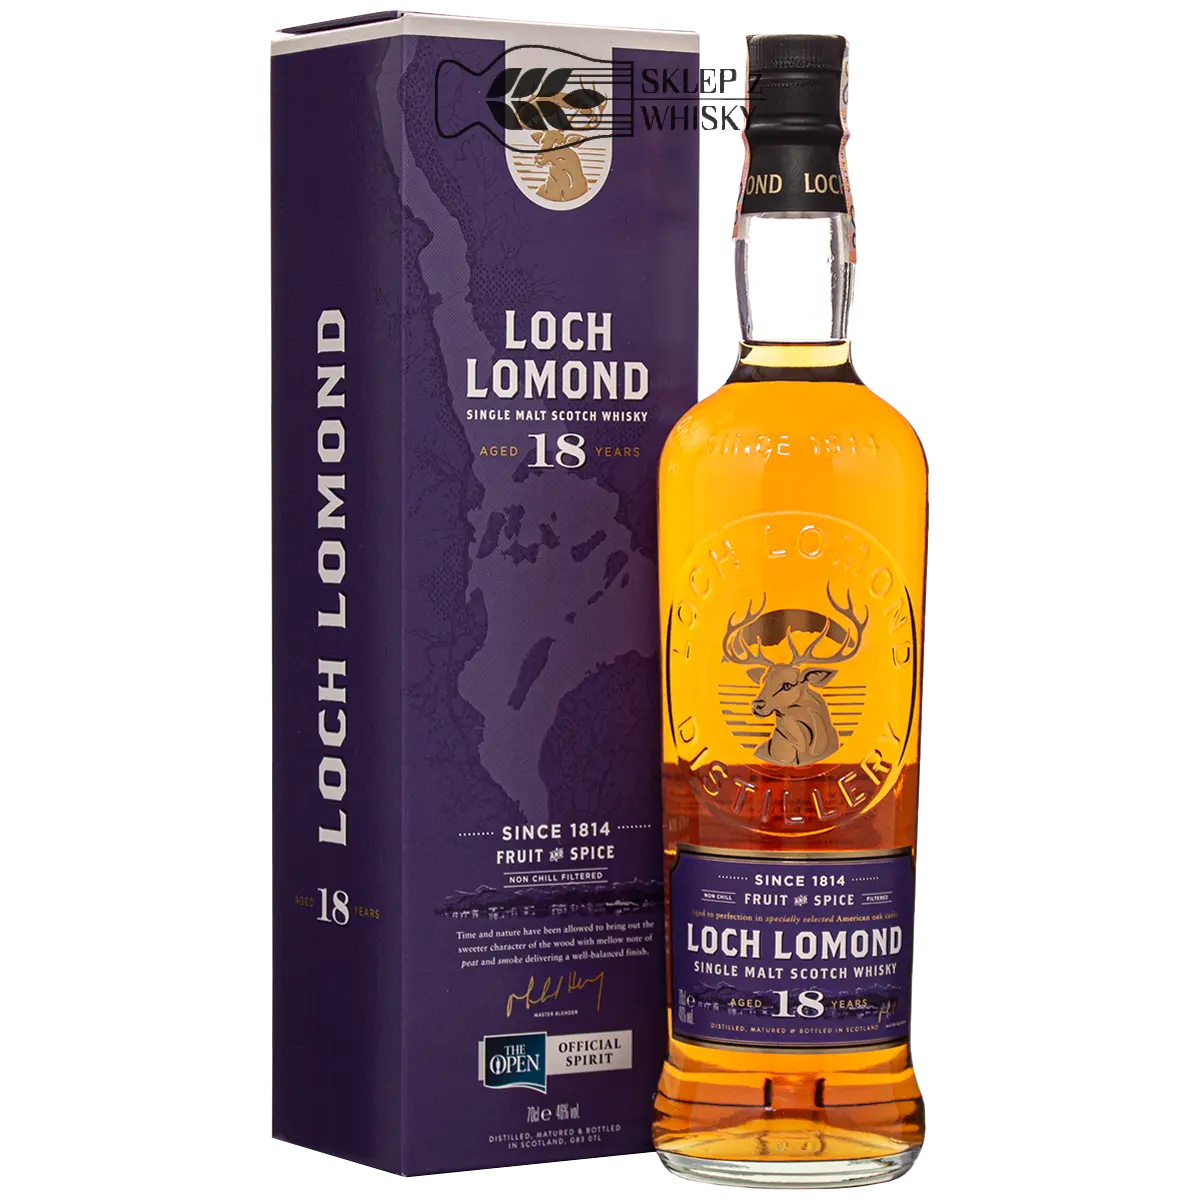 Loch Lomond 18-letnia szkocka whisky single malt z regionu Highlands, 700 ml, w pudełku